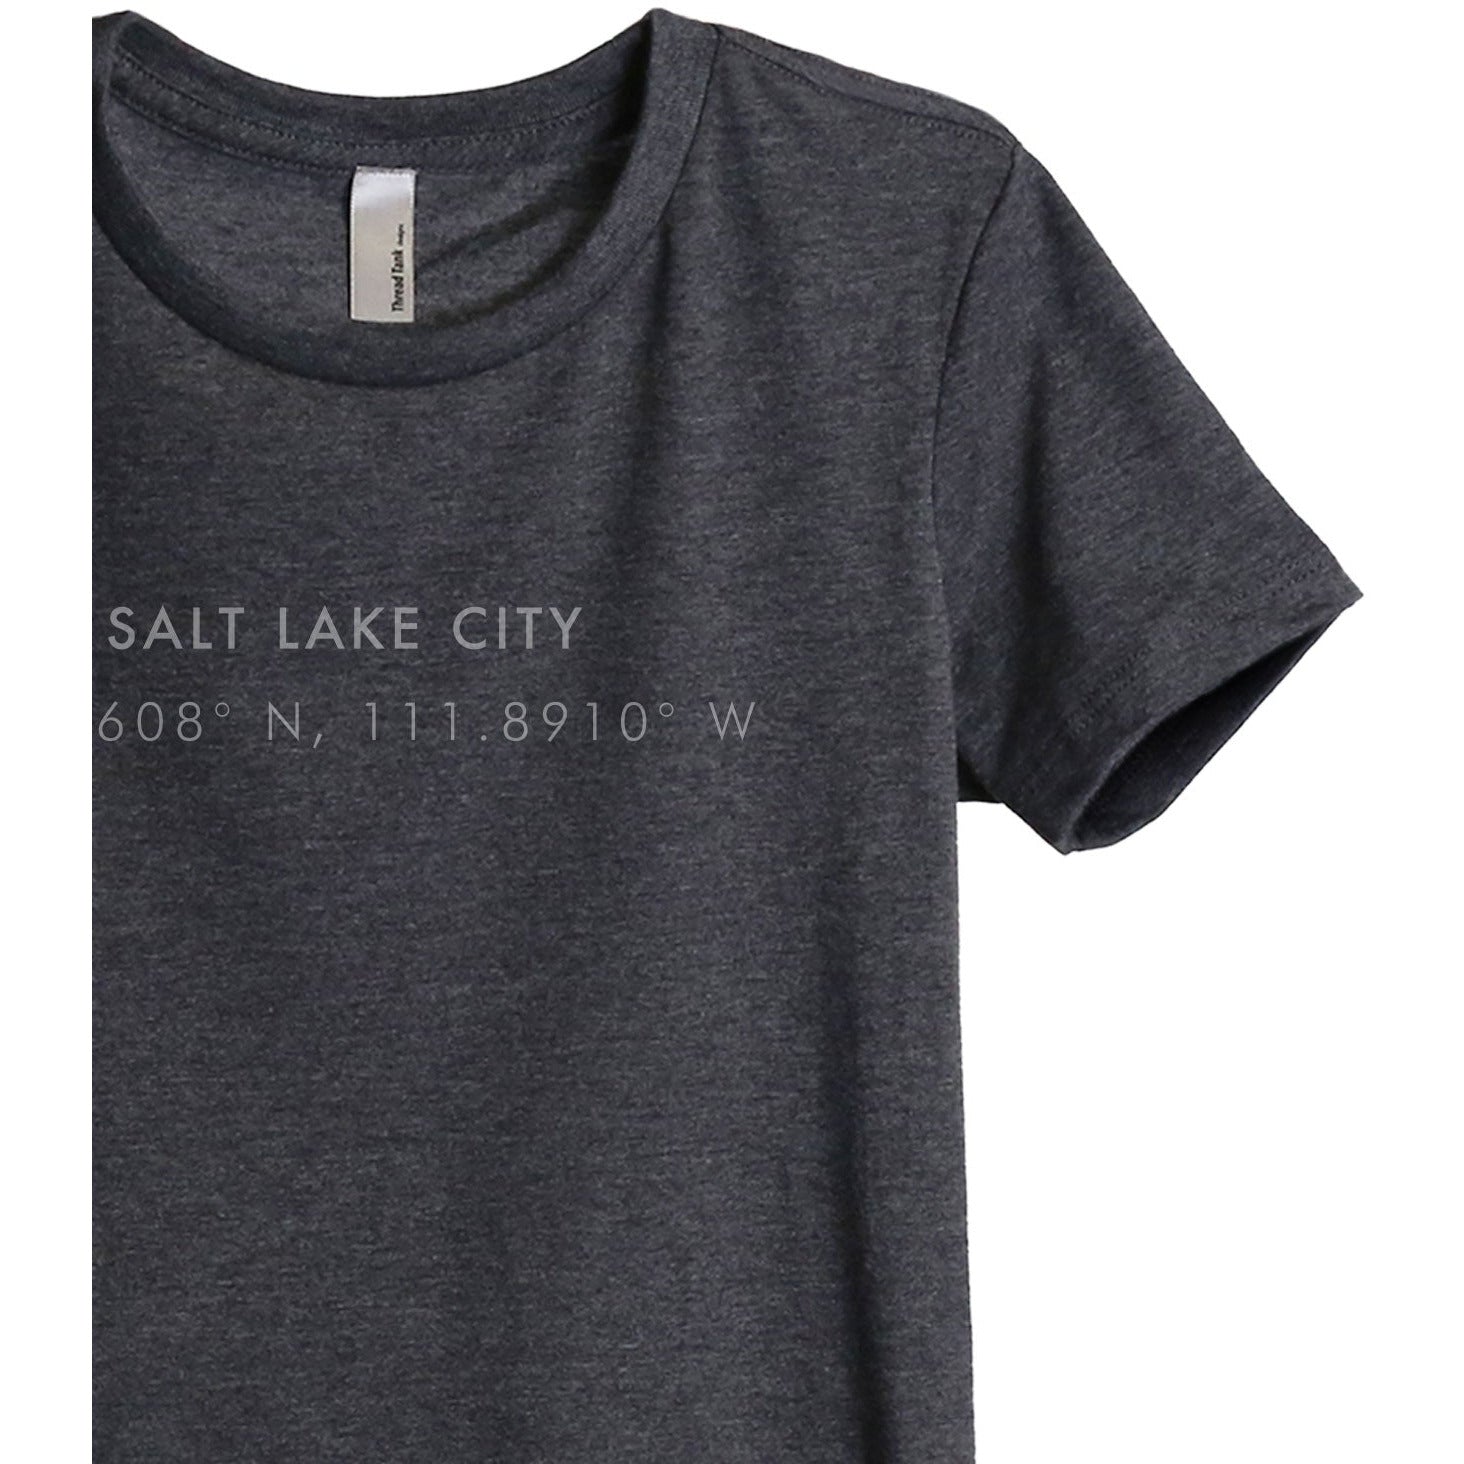 Salt Lake City Utah Coordinates - Stories You Can Wear